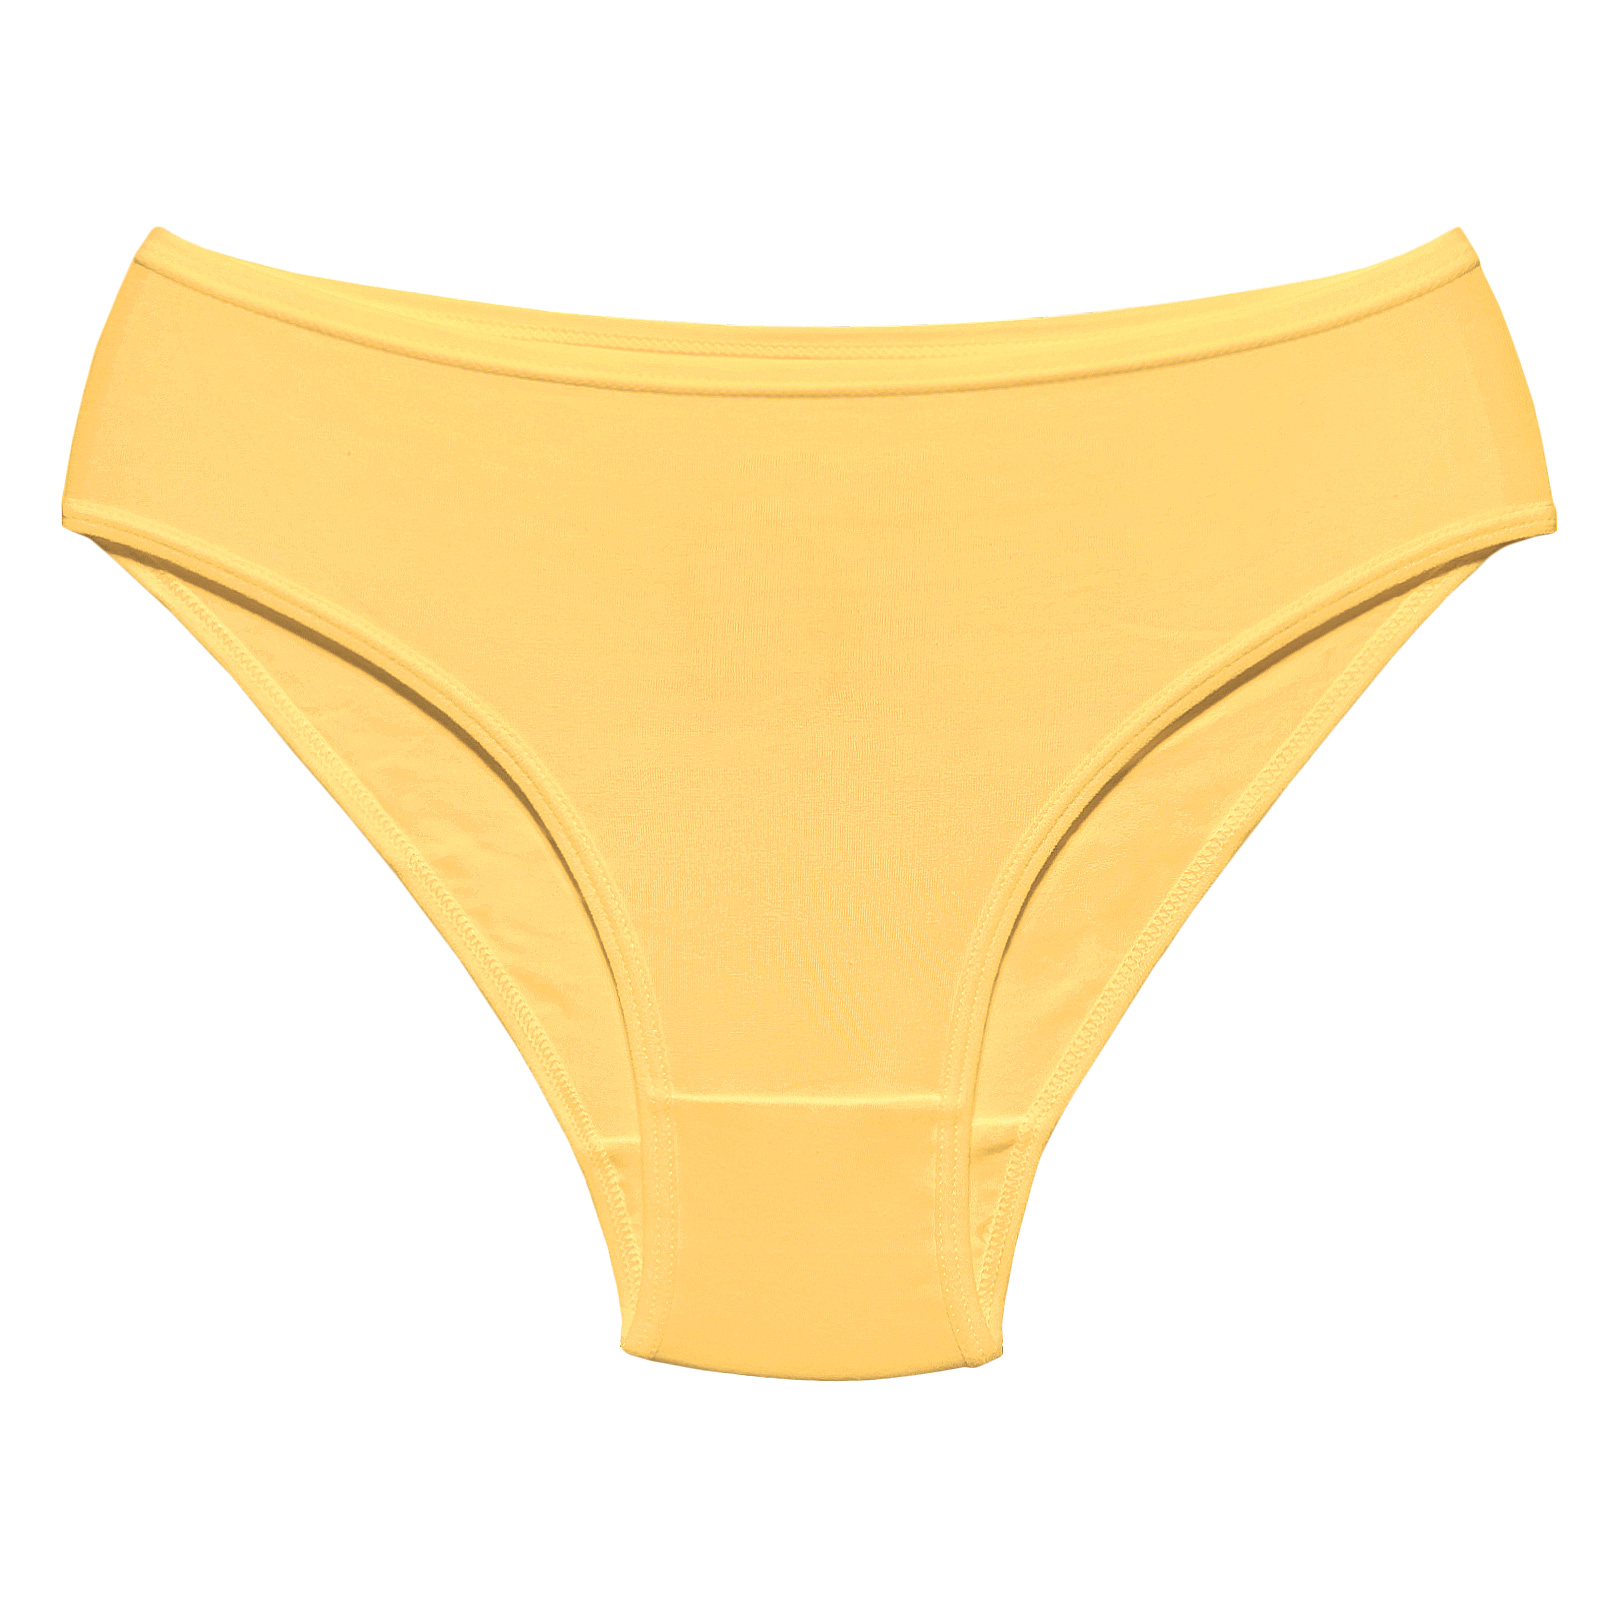 شورت زنانه مدل نارسیس کد K702 رنگ زرد لیمویی